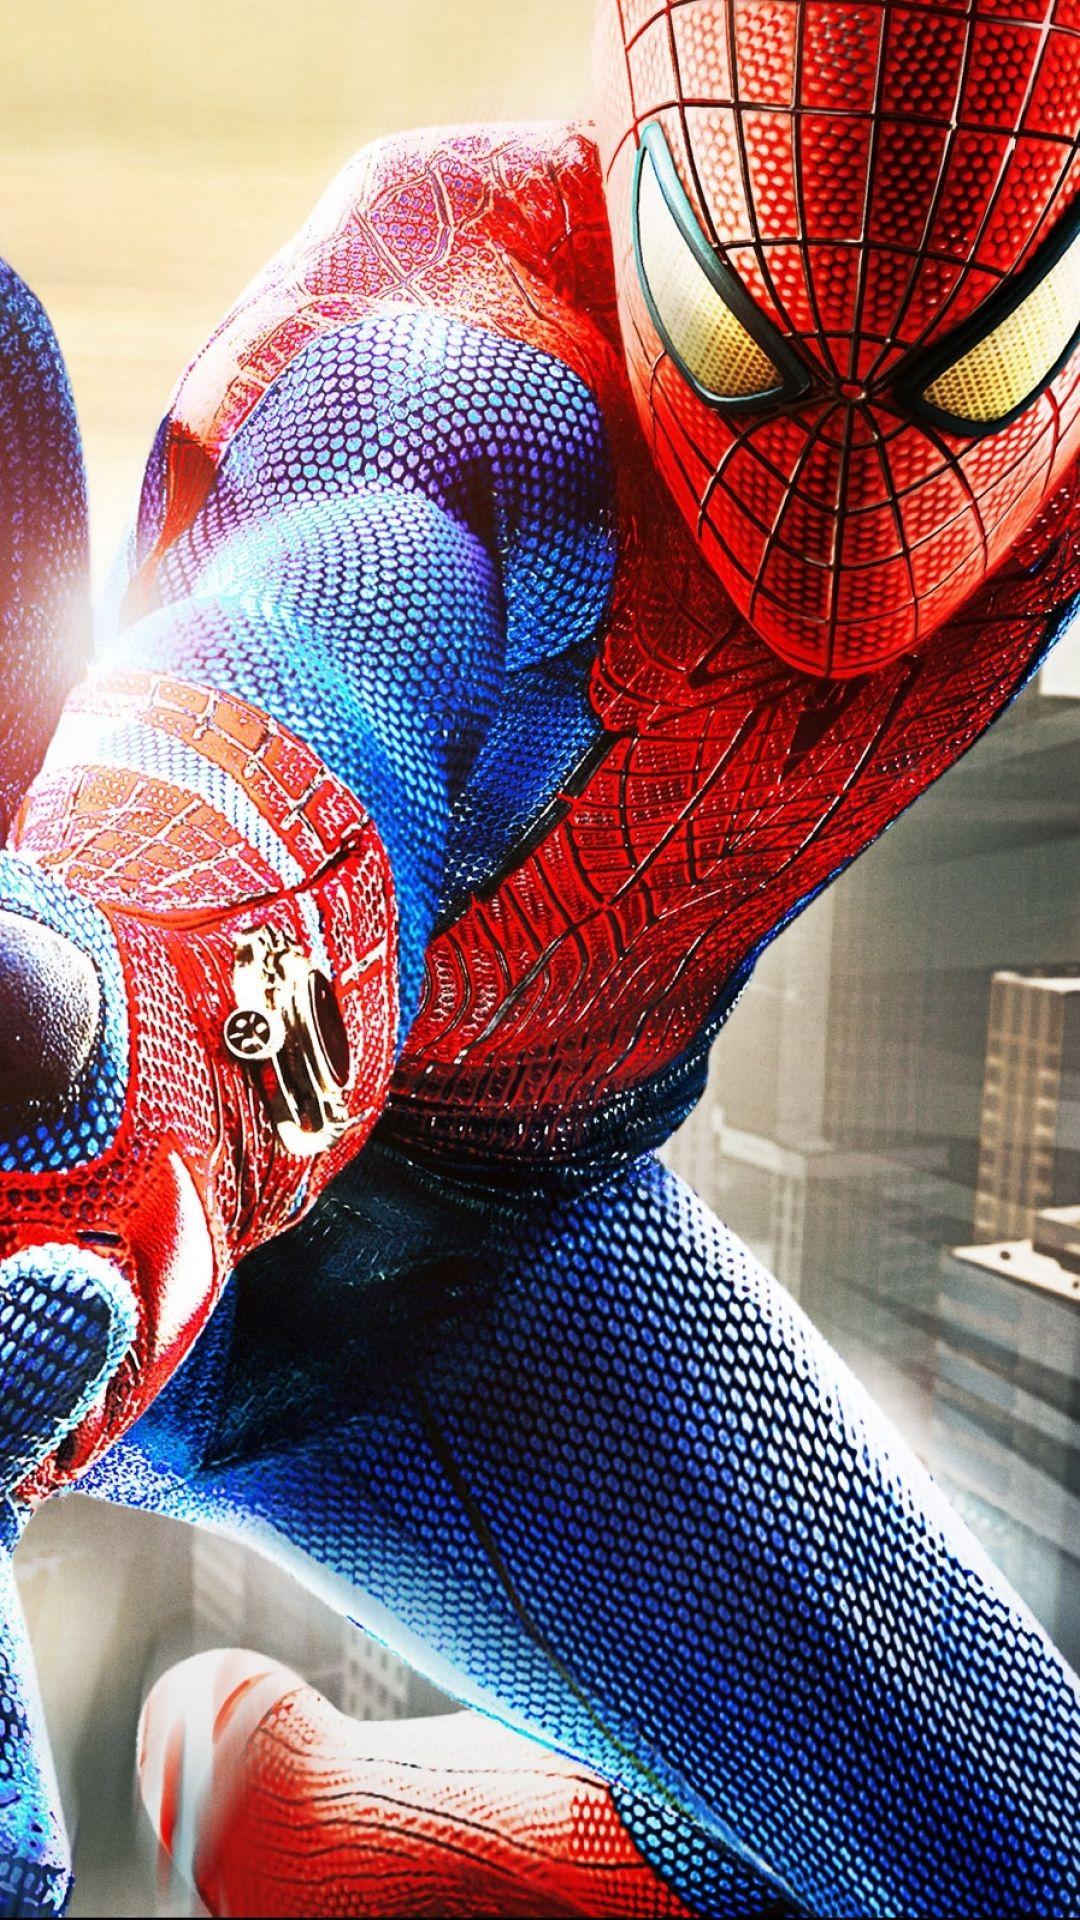 Spider-Man Mobile Wallpapers: Những hình nền di động Người Nhện tuyệt đẹp sẽ khiến cho điện thoại của bạn độc đáo và thu hút hơn bao giờ hết. Khám phá những bức tranh tuyệt đẹp với độ phân giải cao và đầy sức mạnh của Người Nhện. Hãy tải ngay những bức hình nền này để trang trí màn hình điện thoại của bạn.